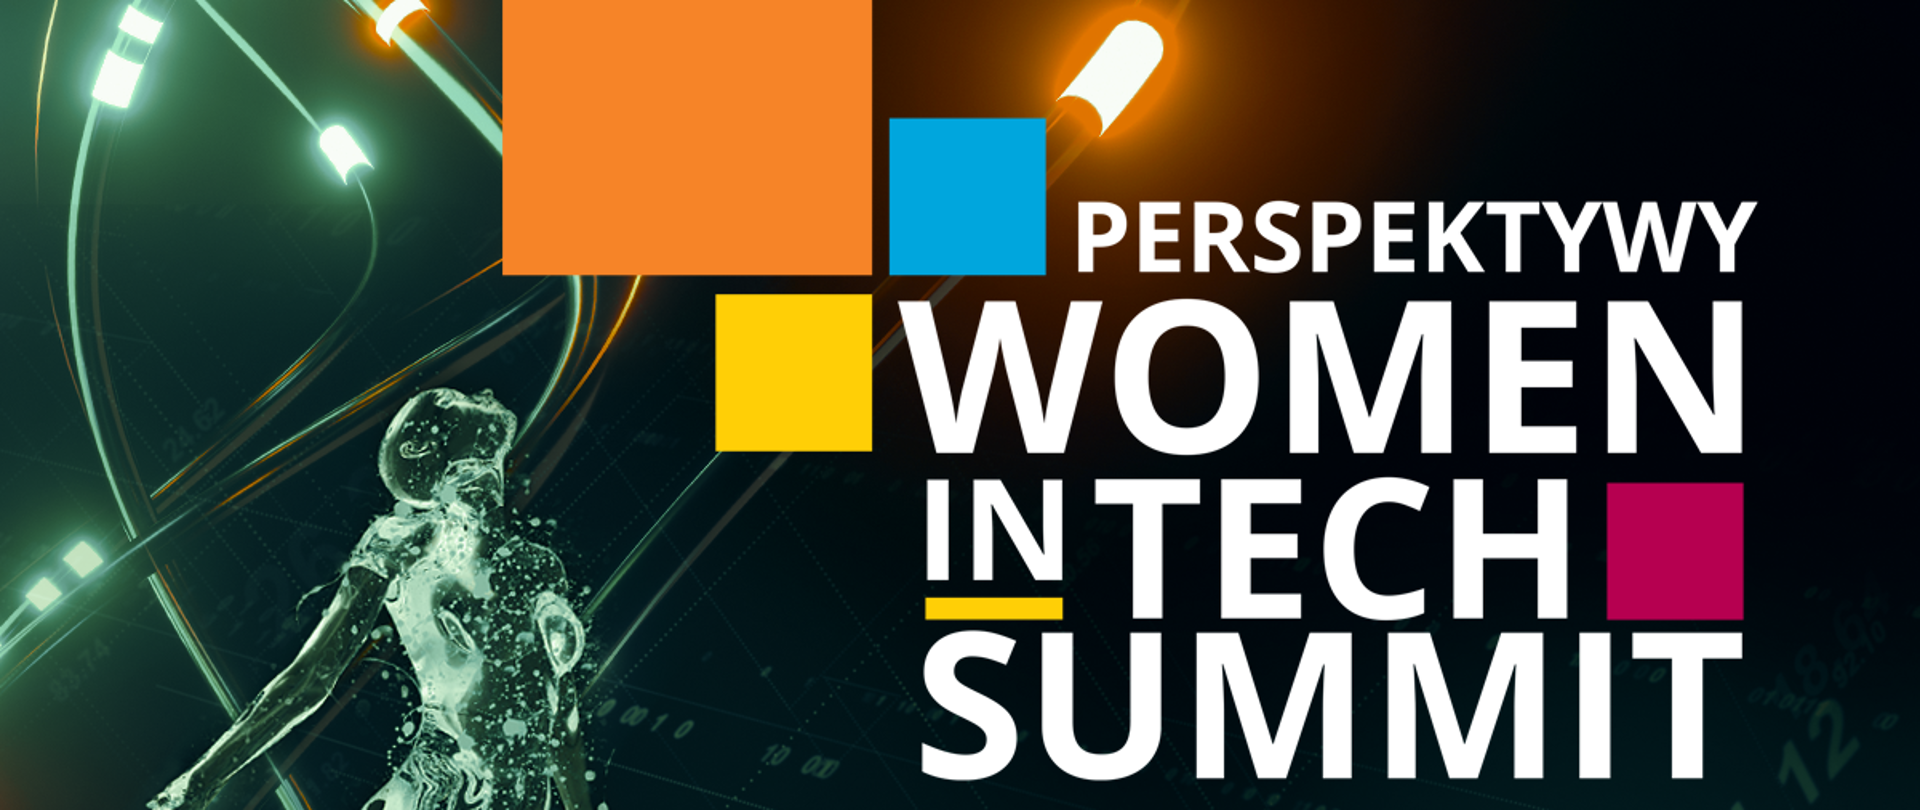 Perspektywy Women In Tech Summit